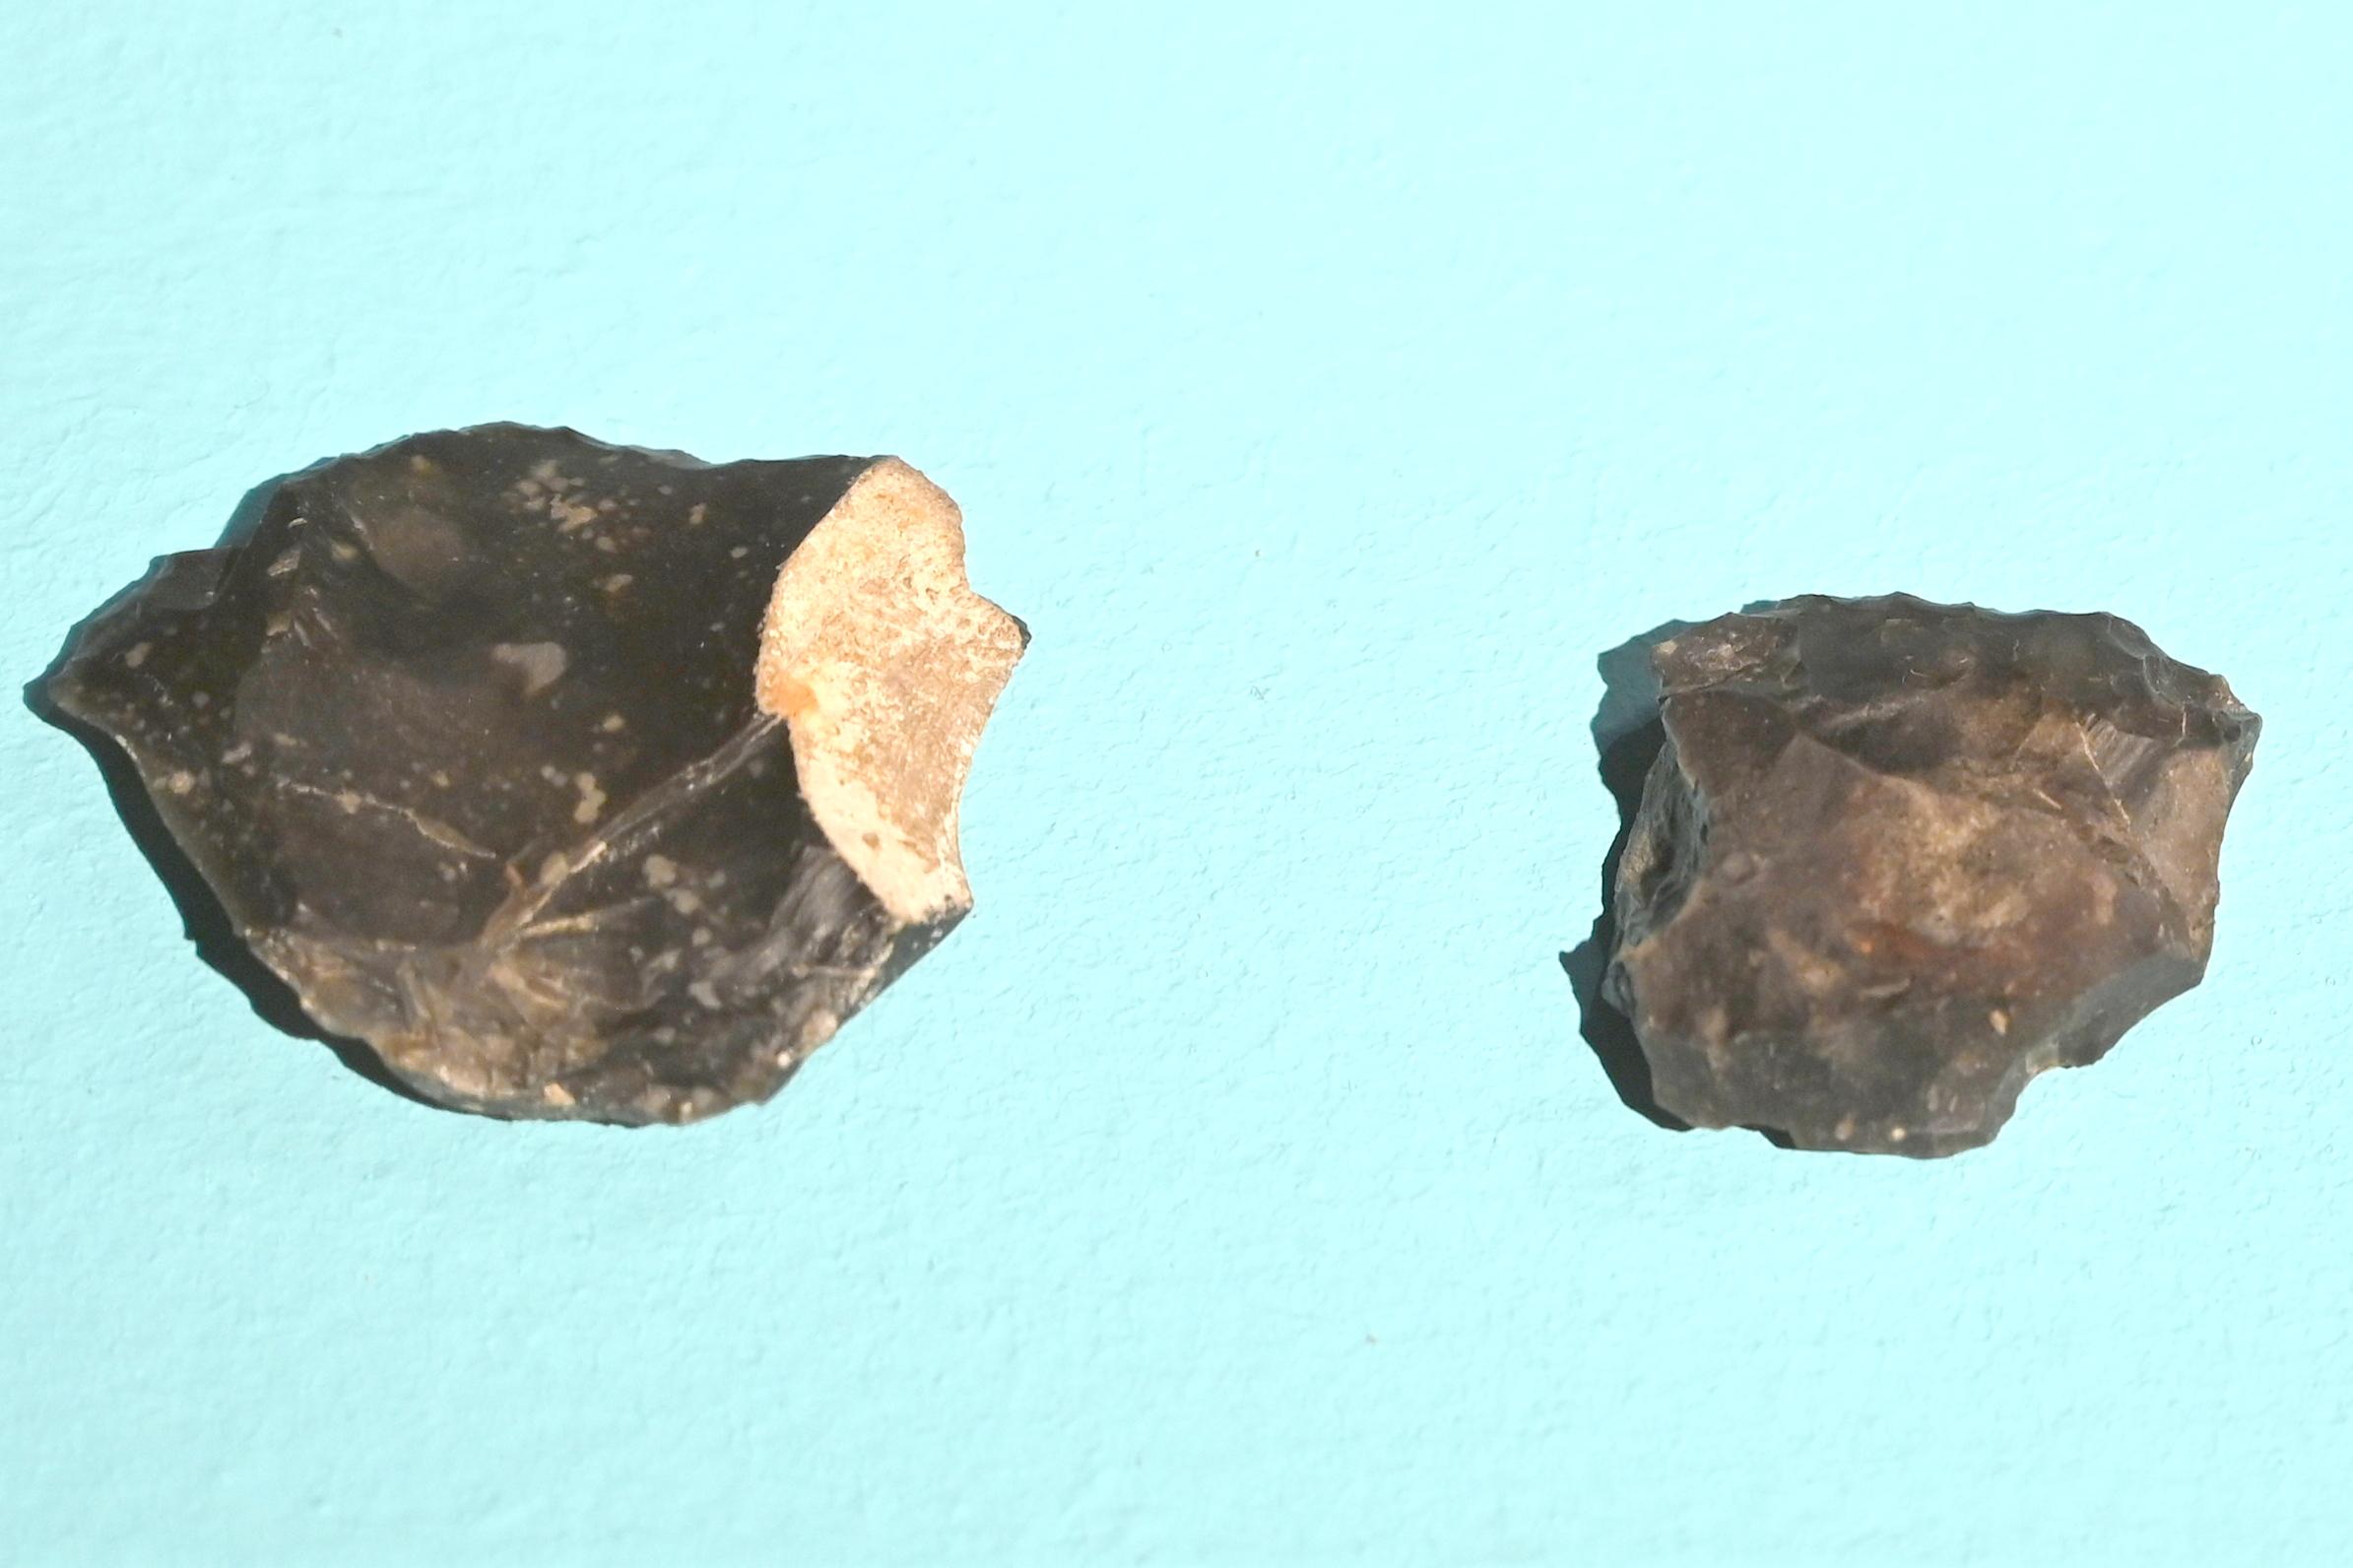 Abschlagkratzer, Mesolithikum, 9500 - 5500 v. Chr., 9000 v. Chr., Bild 1/2